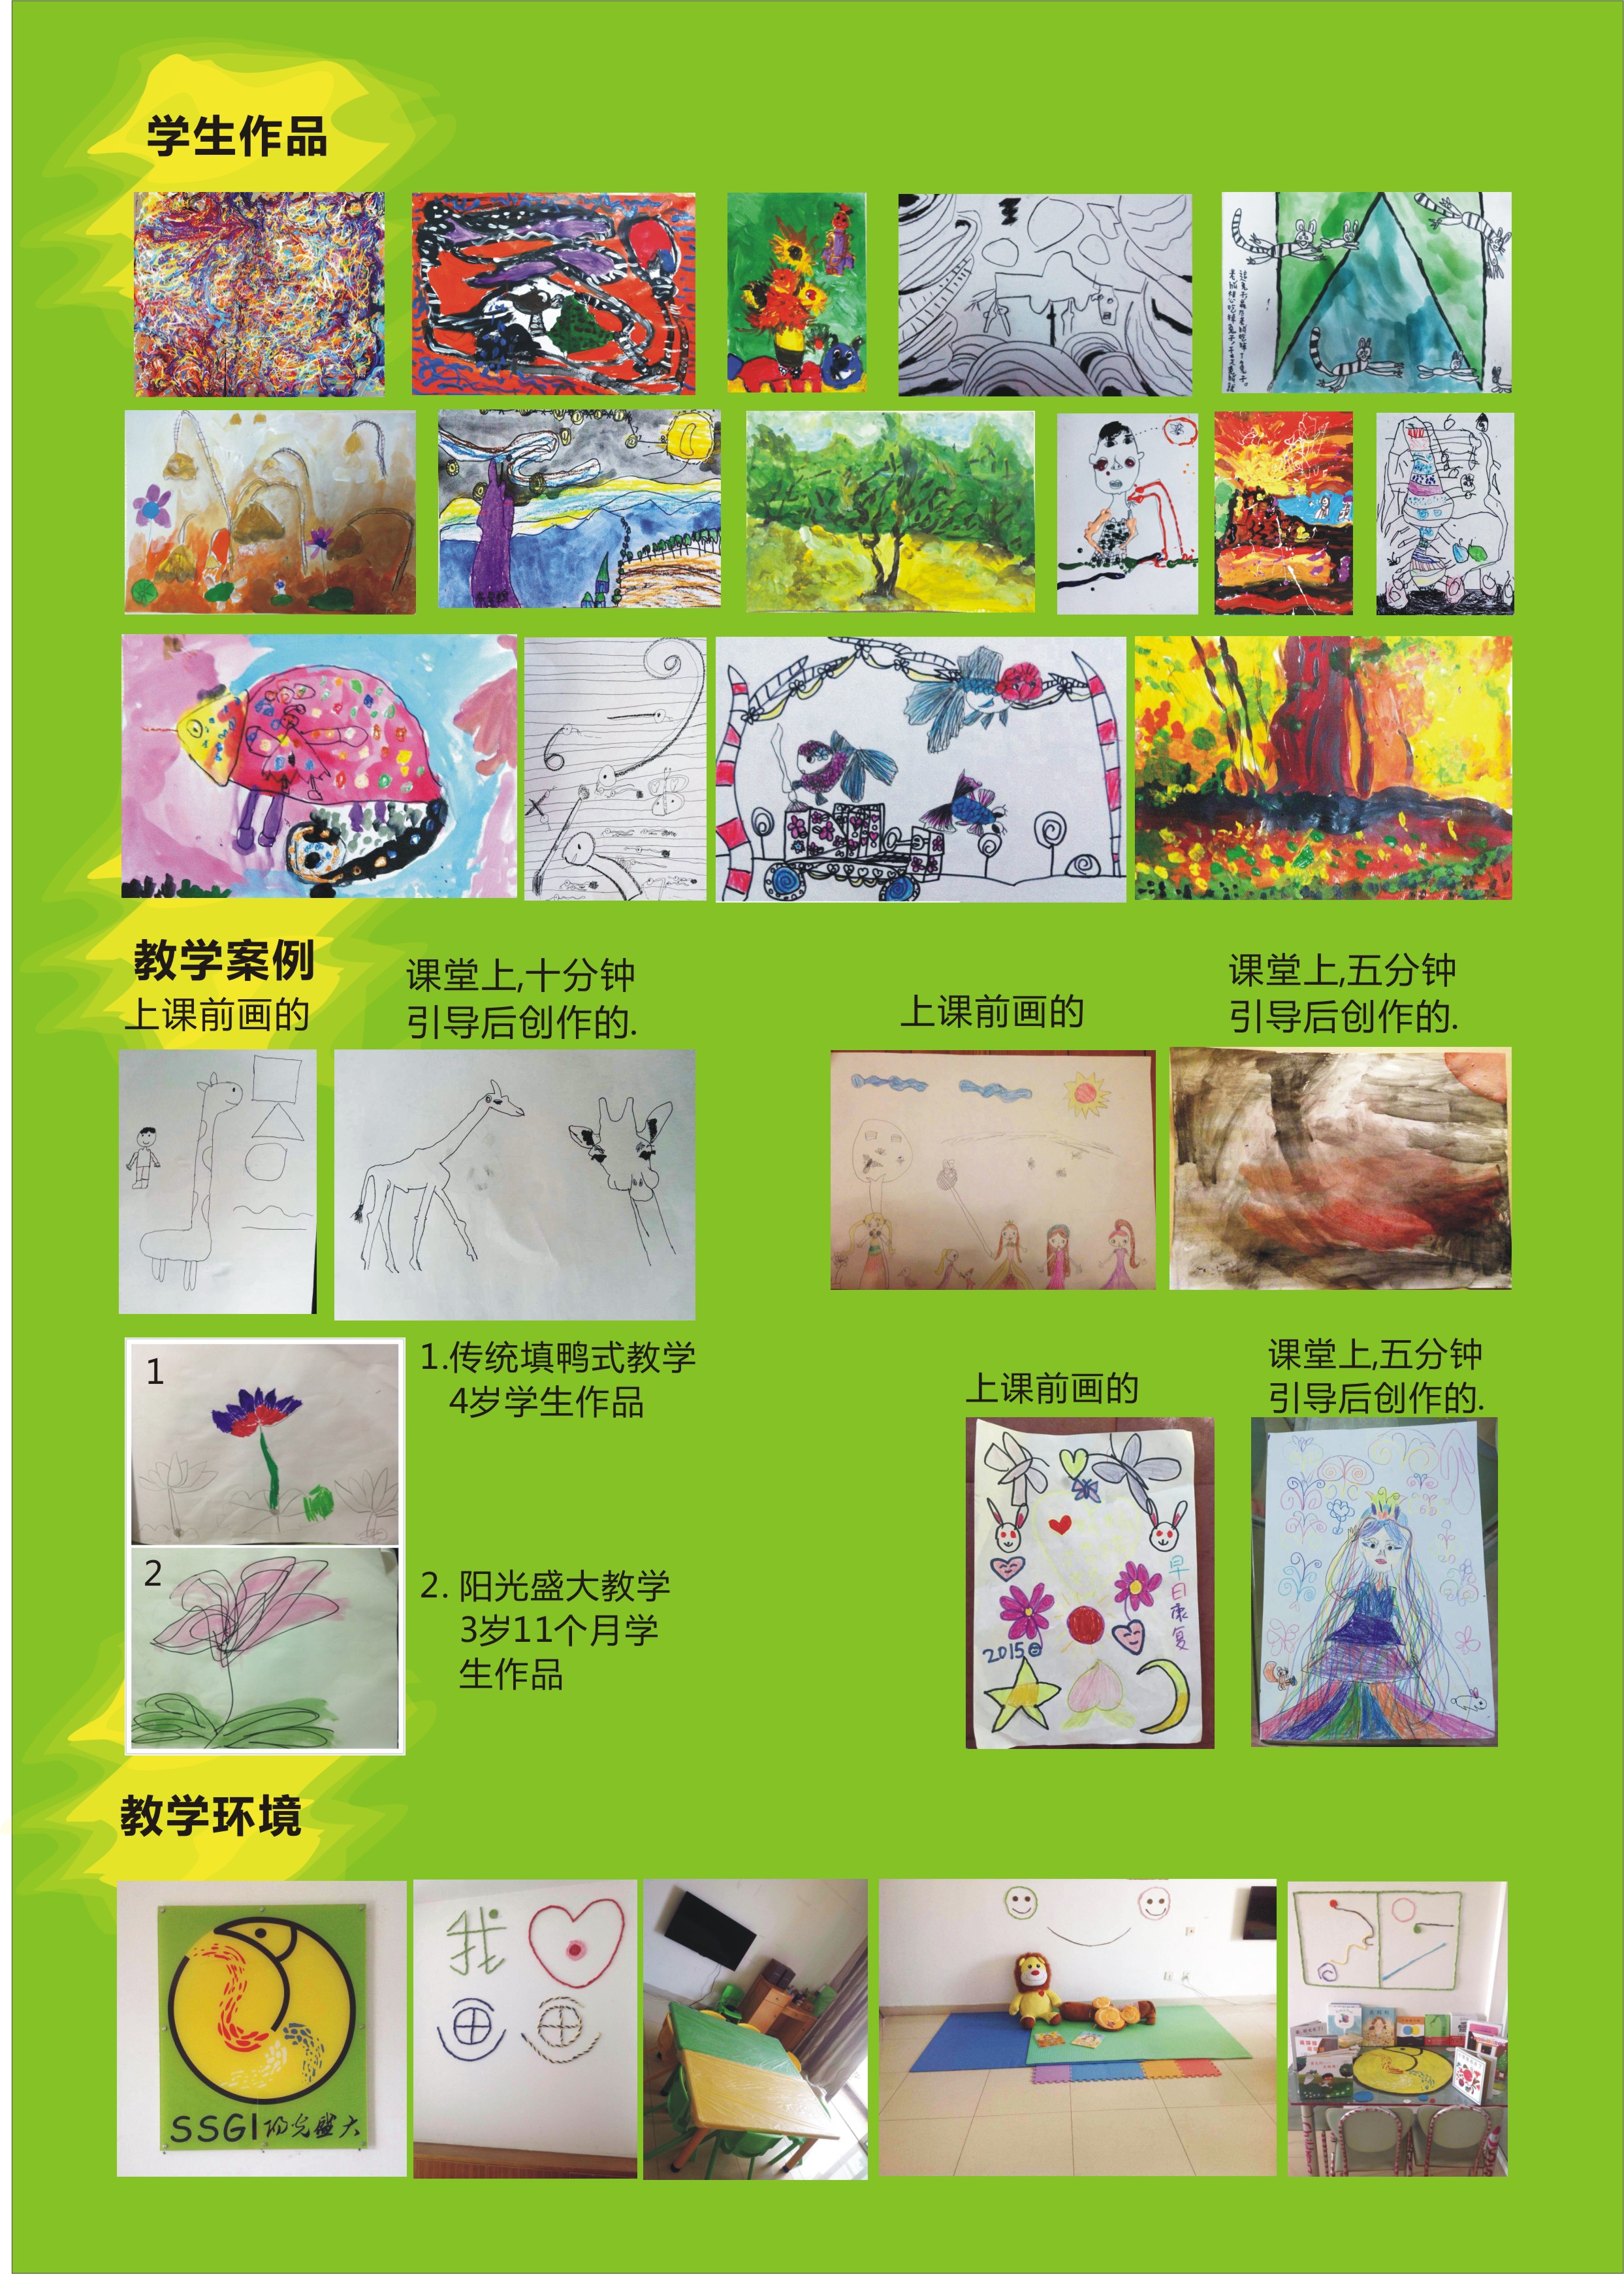 深圳市色彩阳光儿童创意绘本厂家